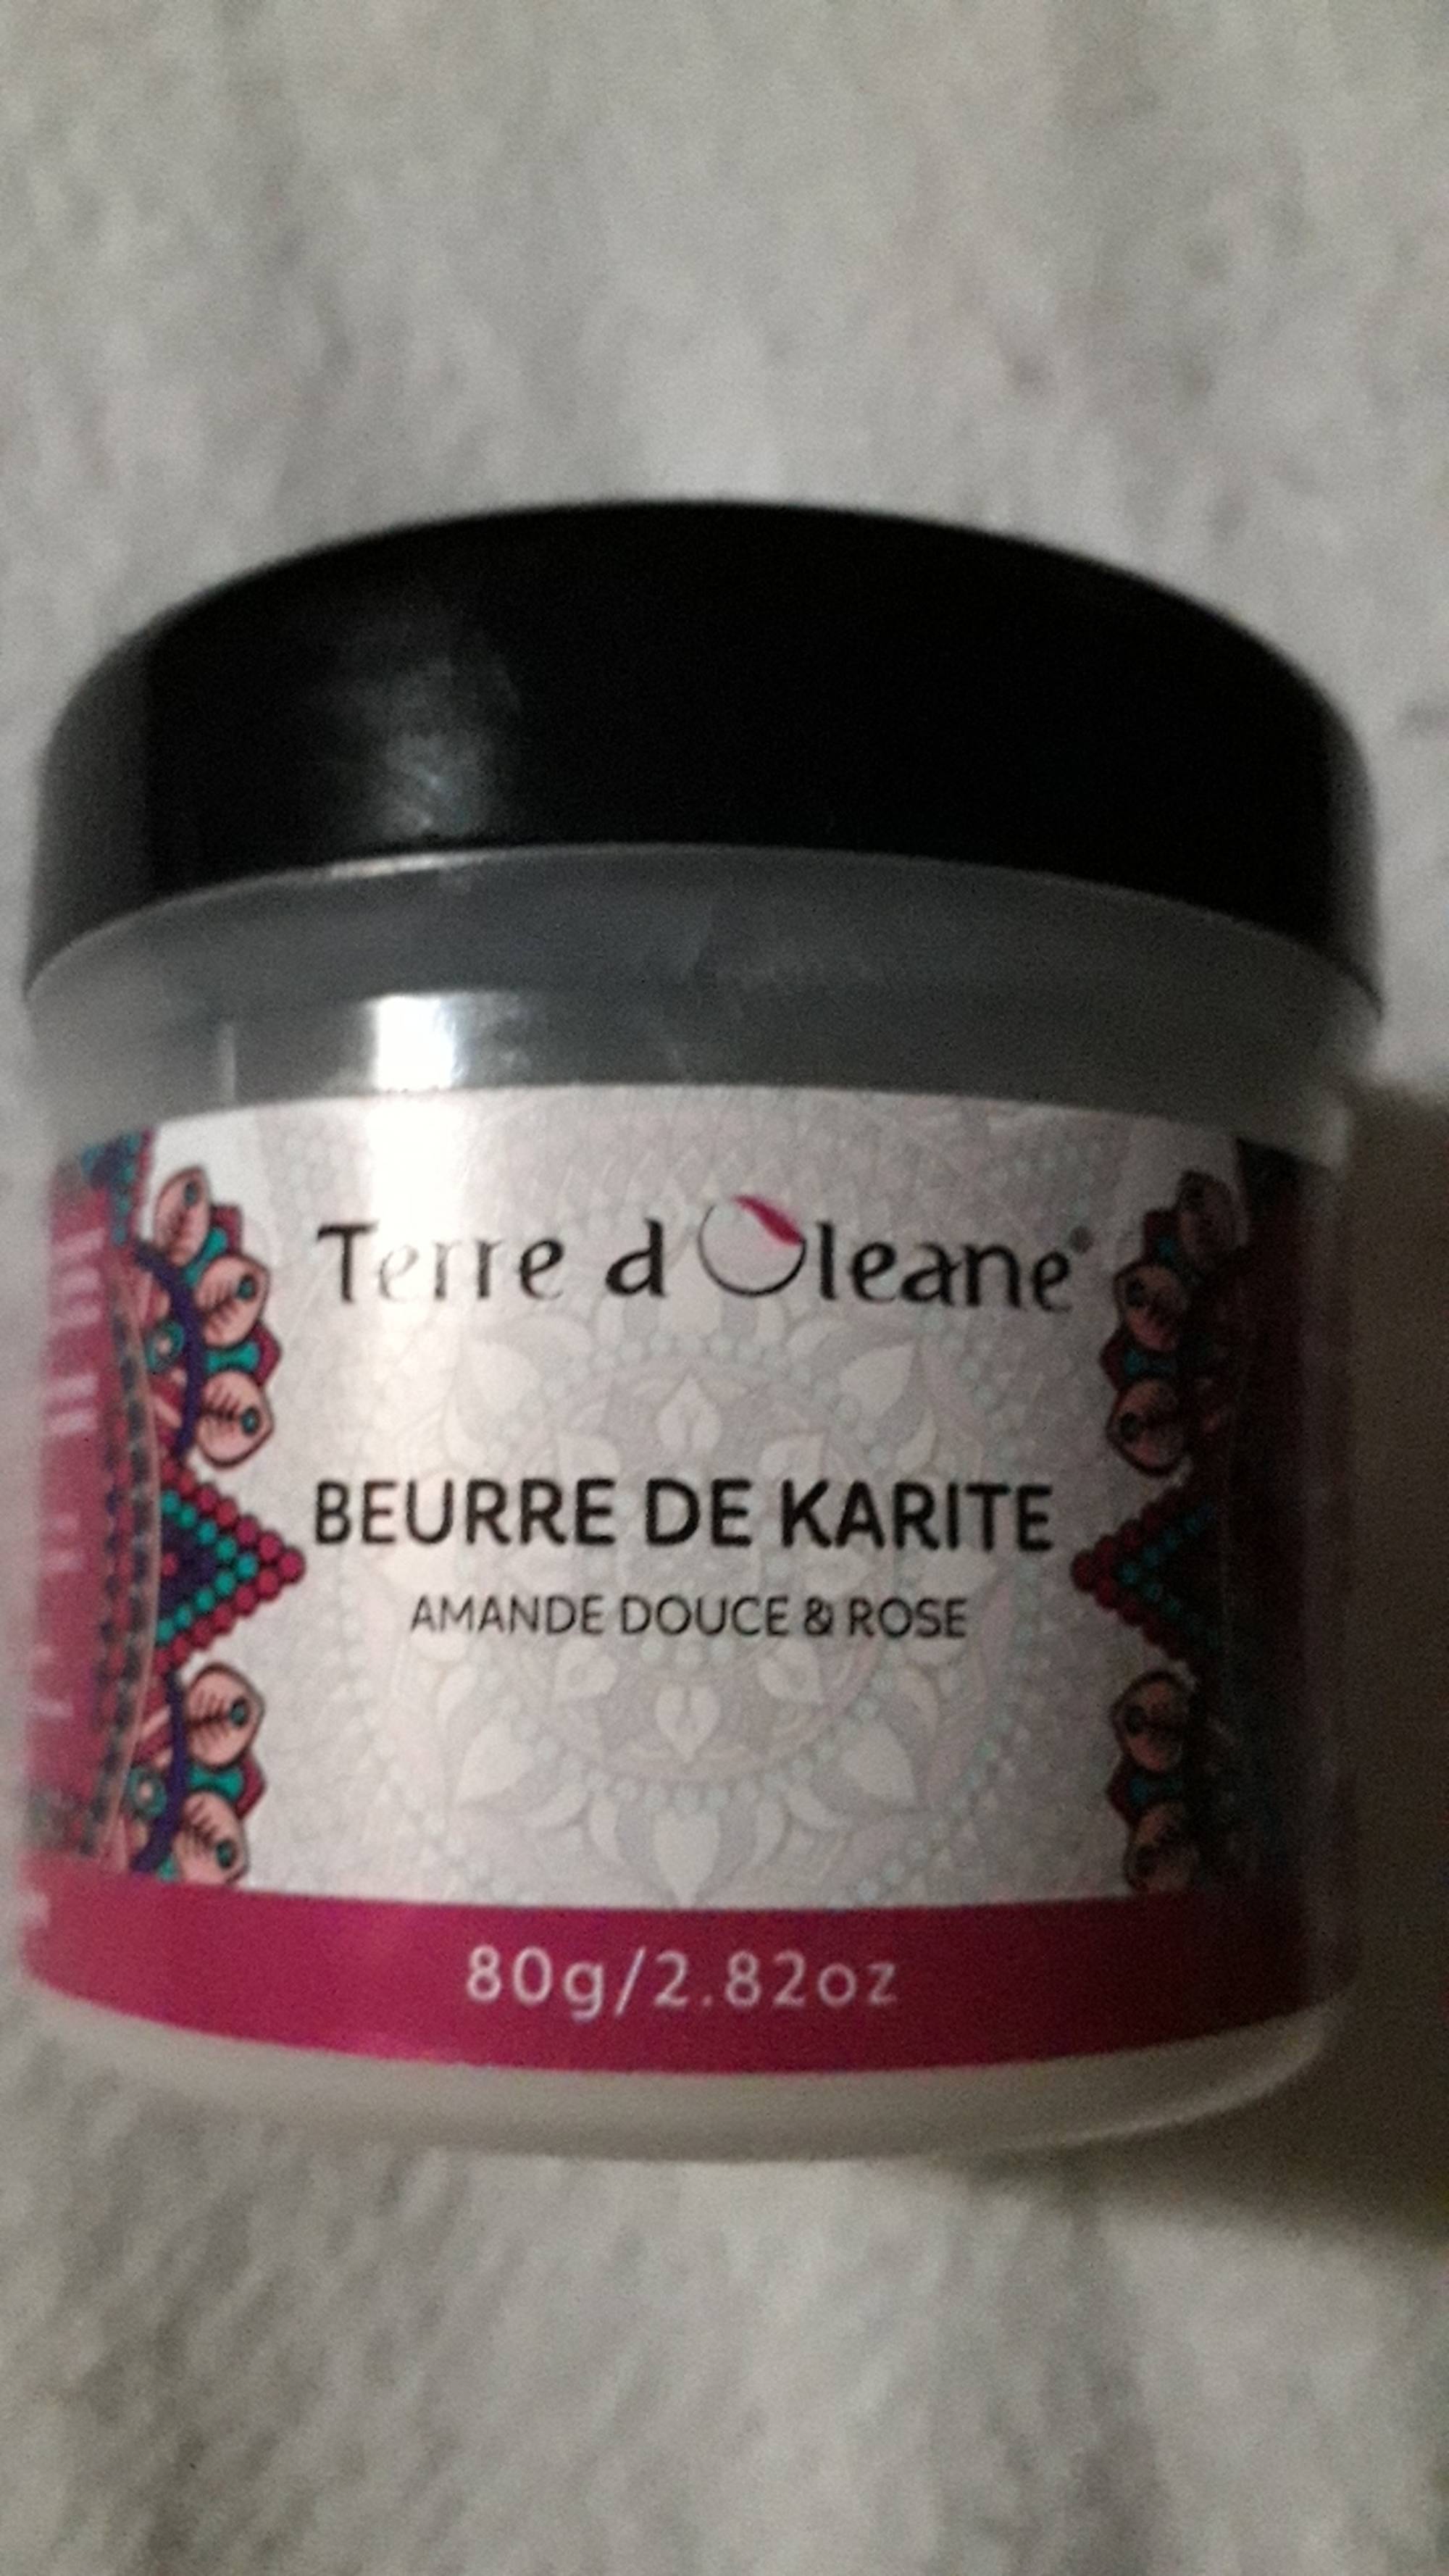 TERRE D'OLEANE - Beurre de karité - Amande douce & rose